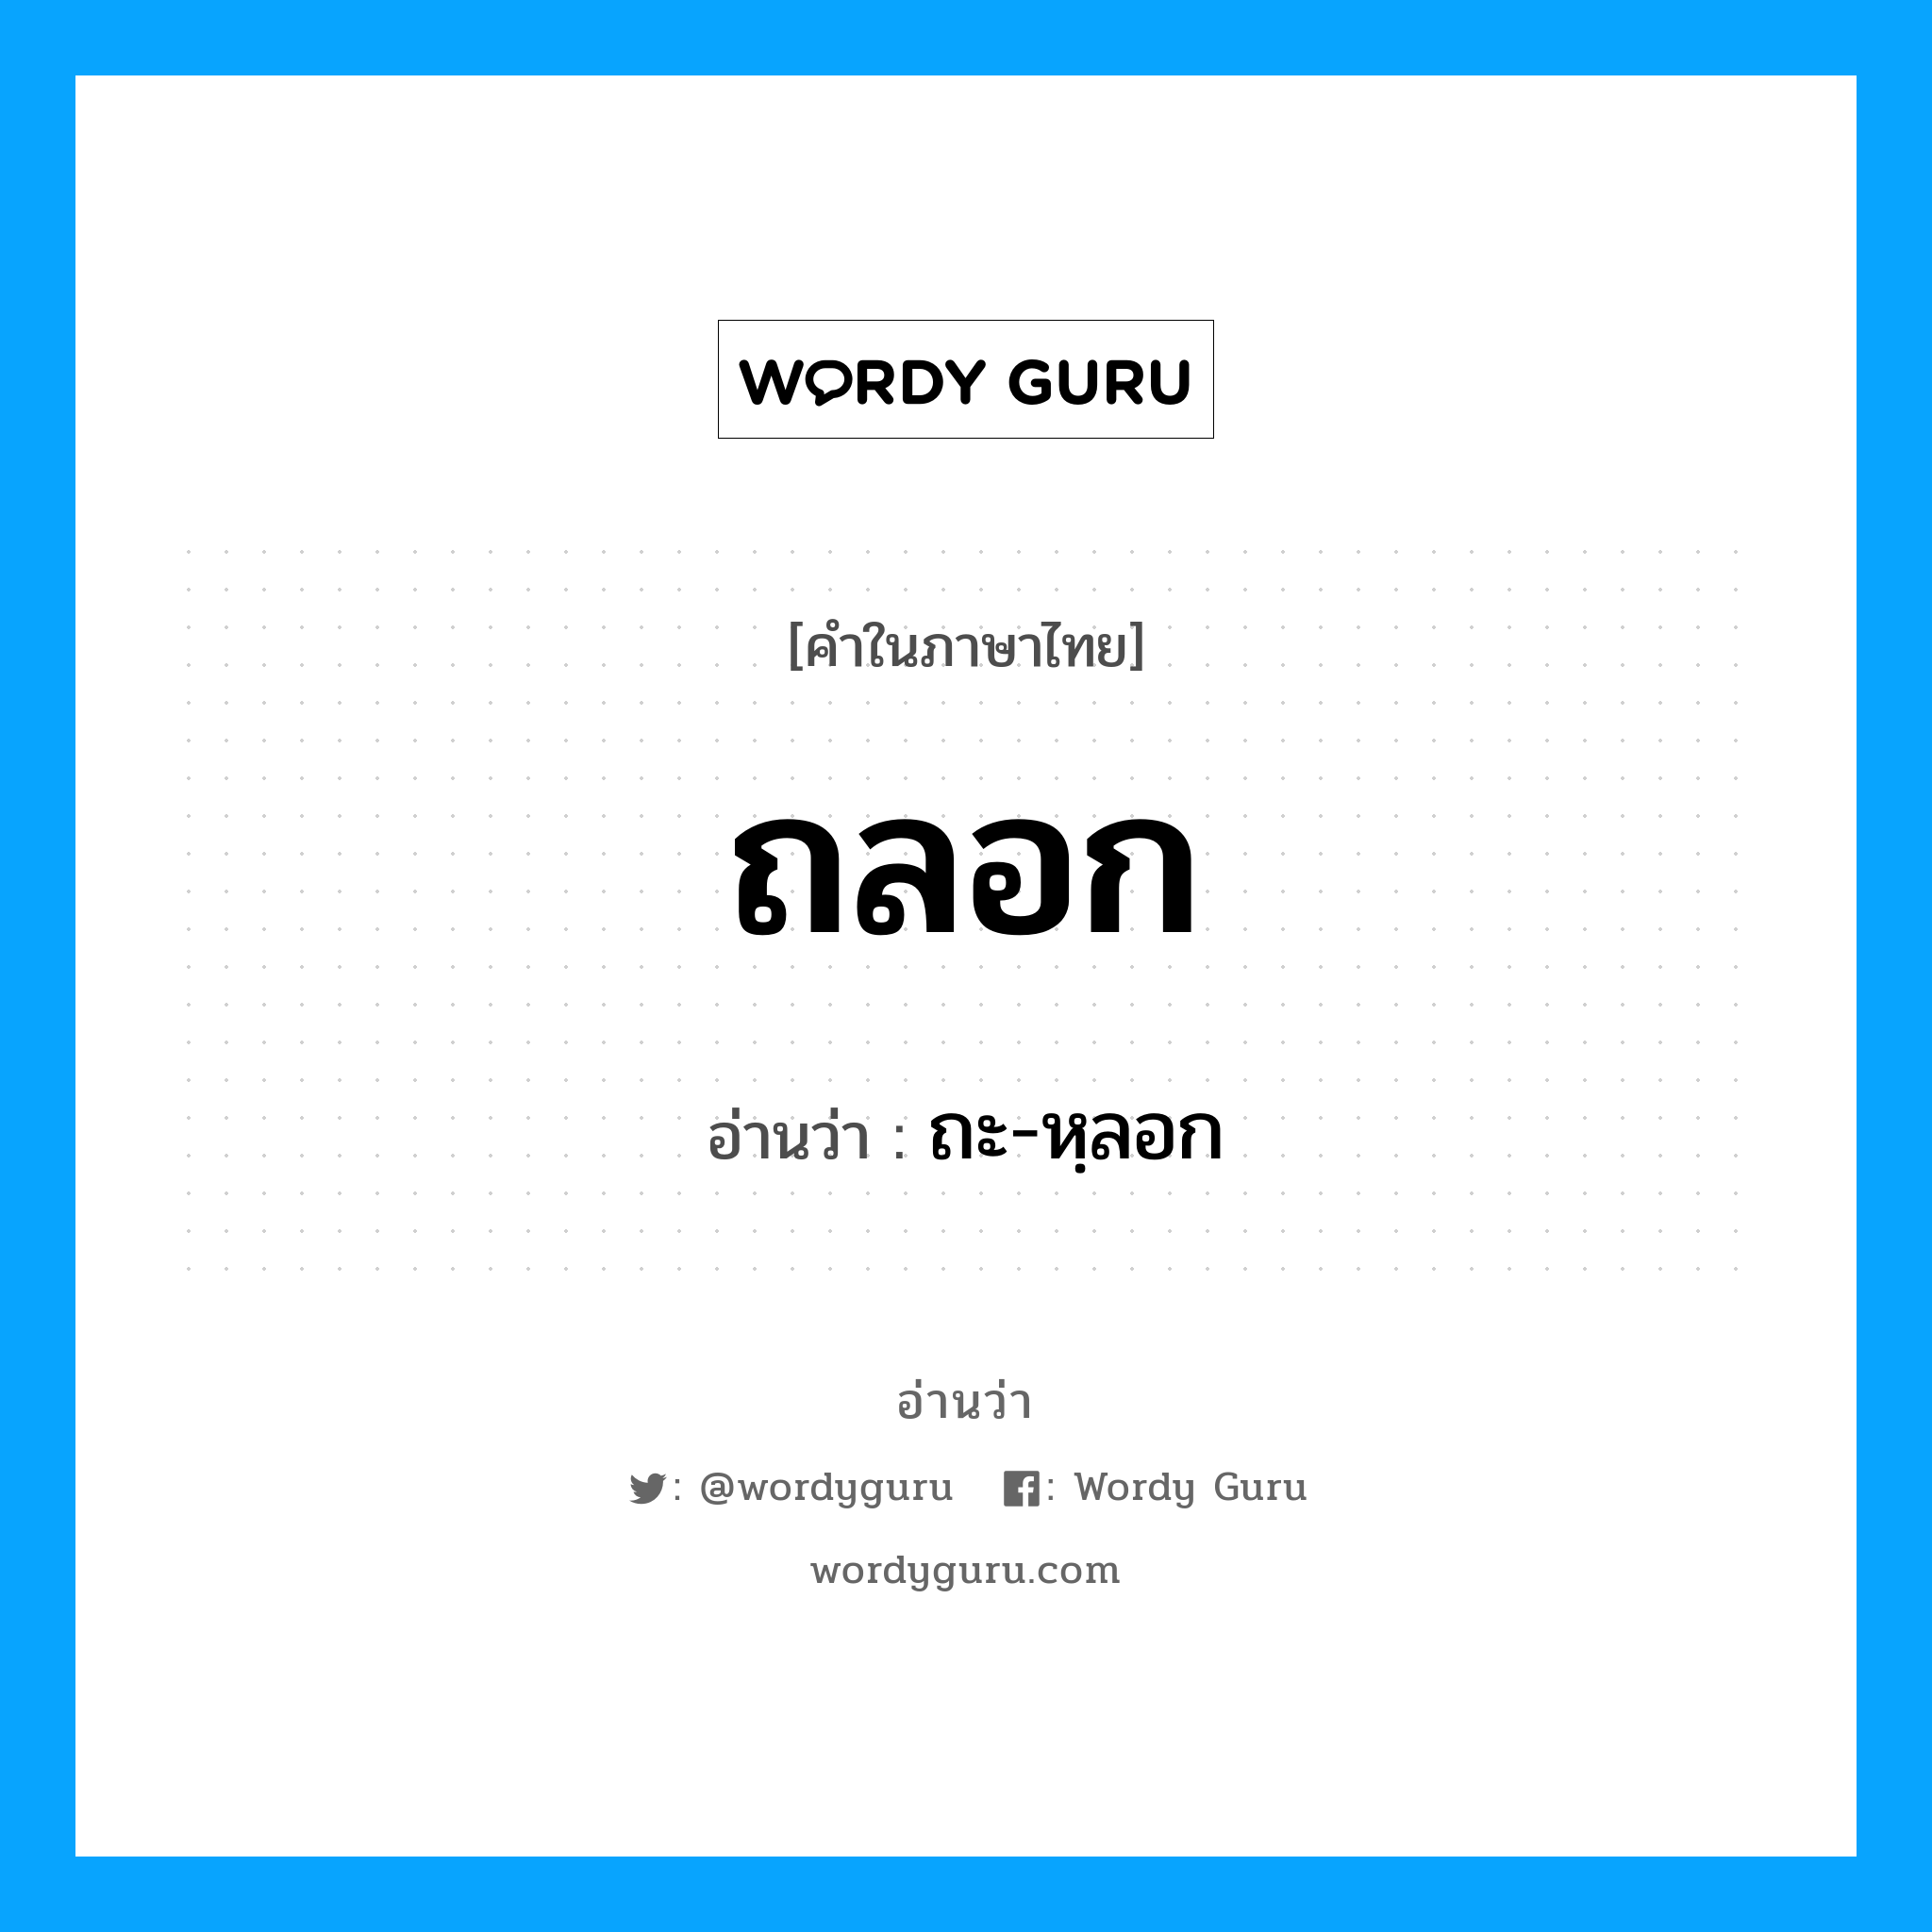 ถะ-หฺลอก เป็นคำอ่านของคำไหน?, คำในภาษาไทย ถะ-หฺลอก อ่านว่า ถลอก